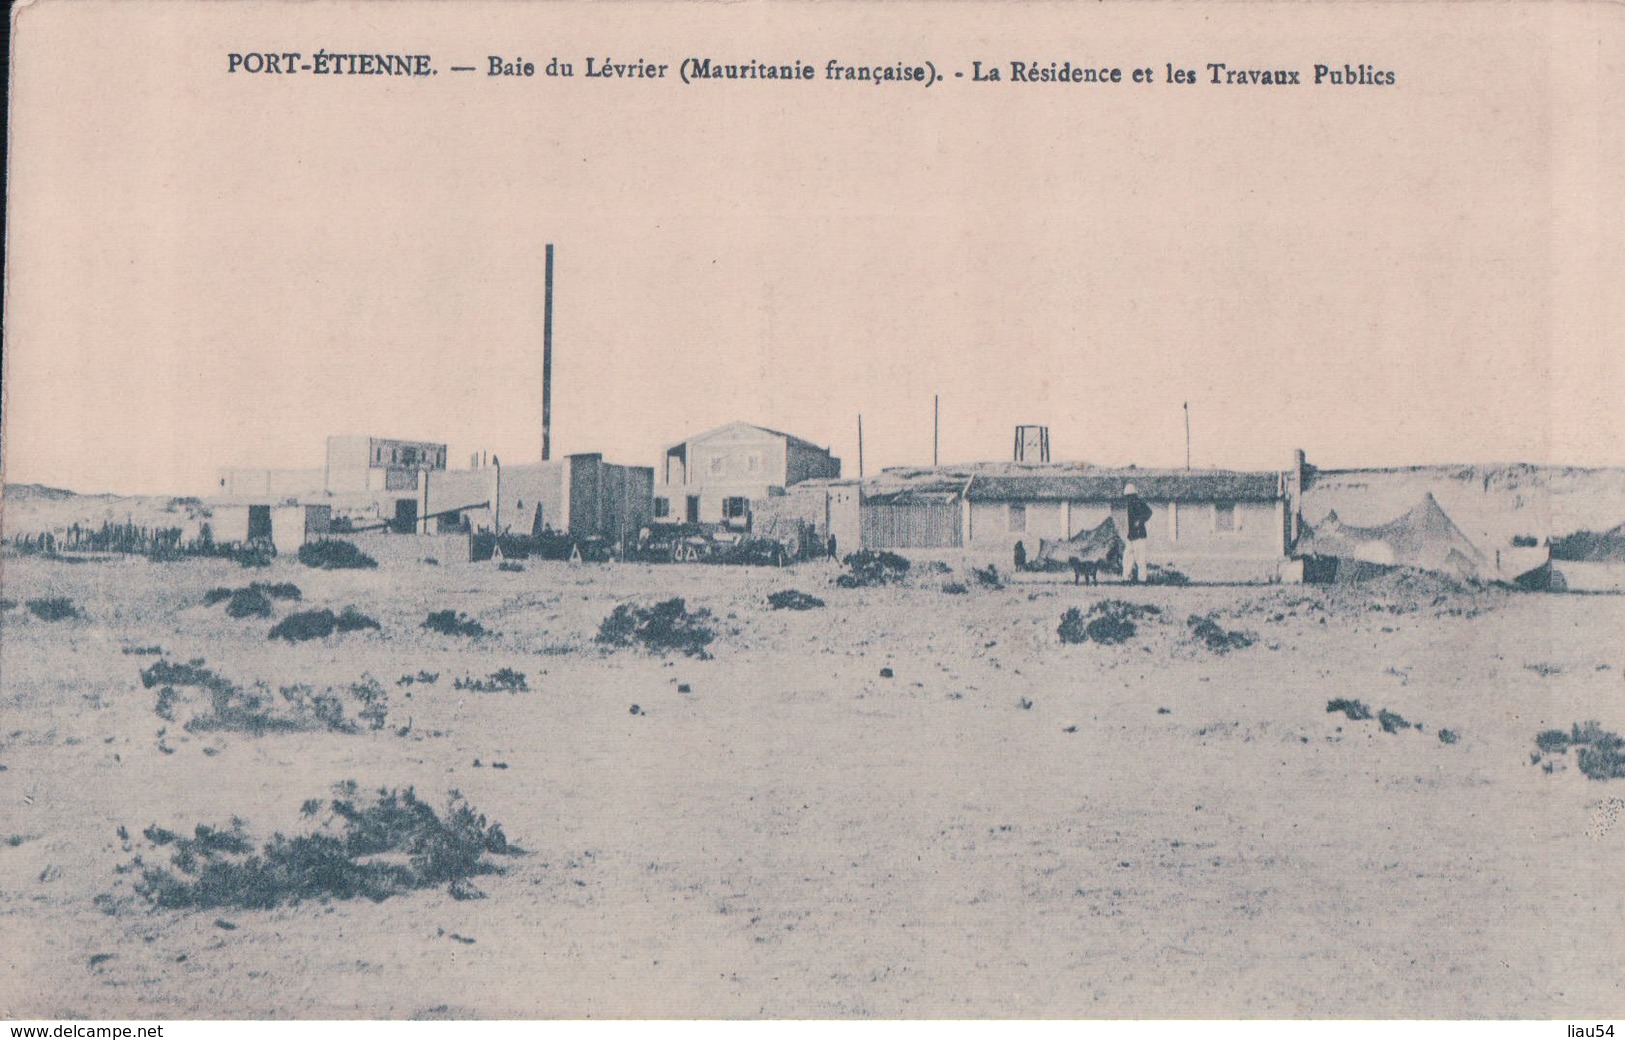 PORT-ETIENNE Baie Du Lévrier La Résidence Et Les Travaux Publics - Mauritania